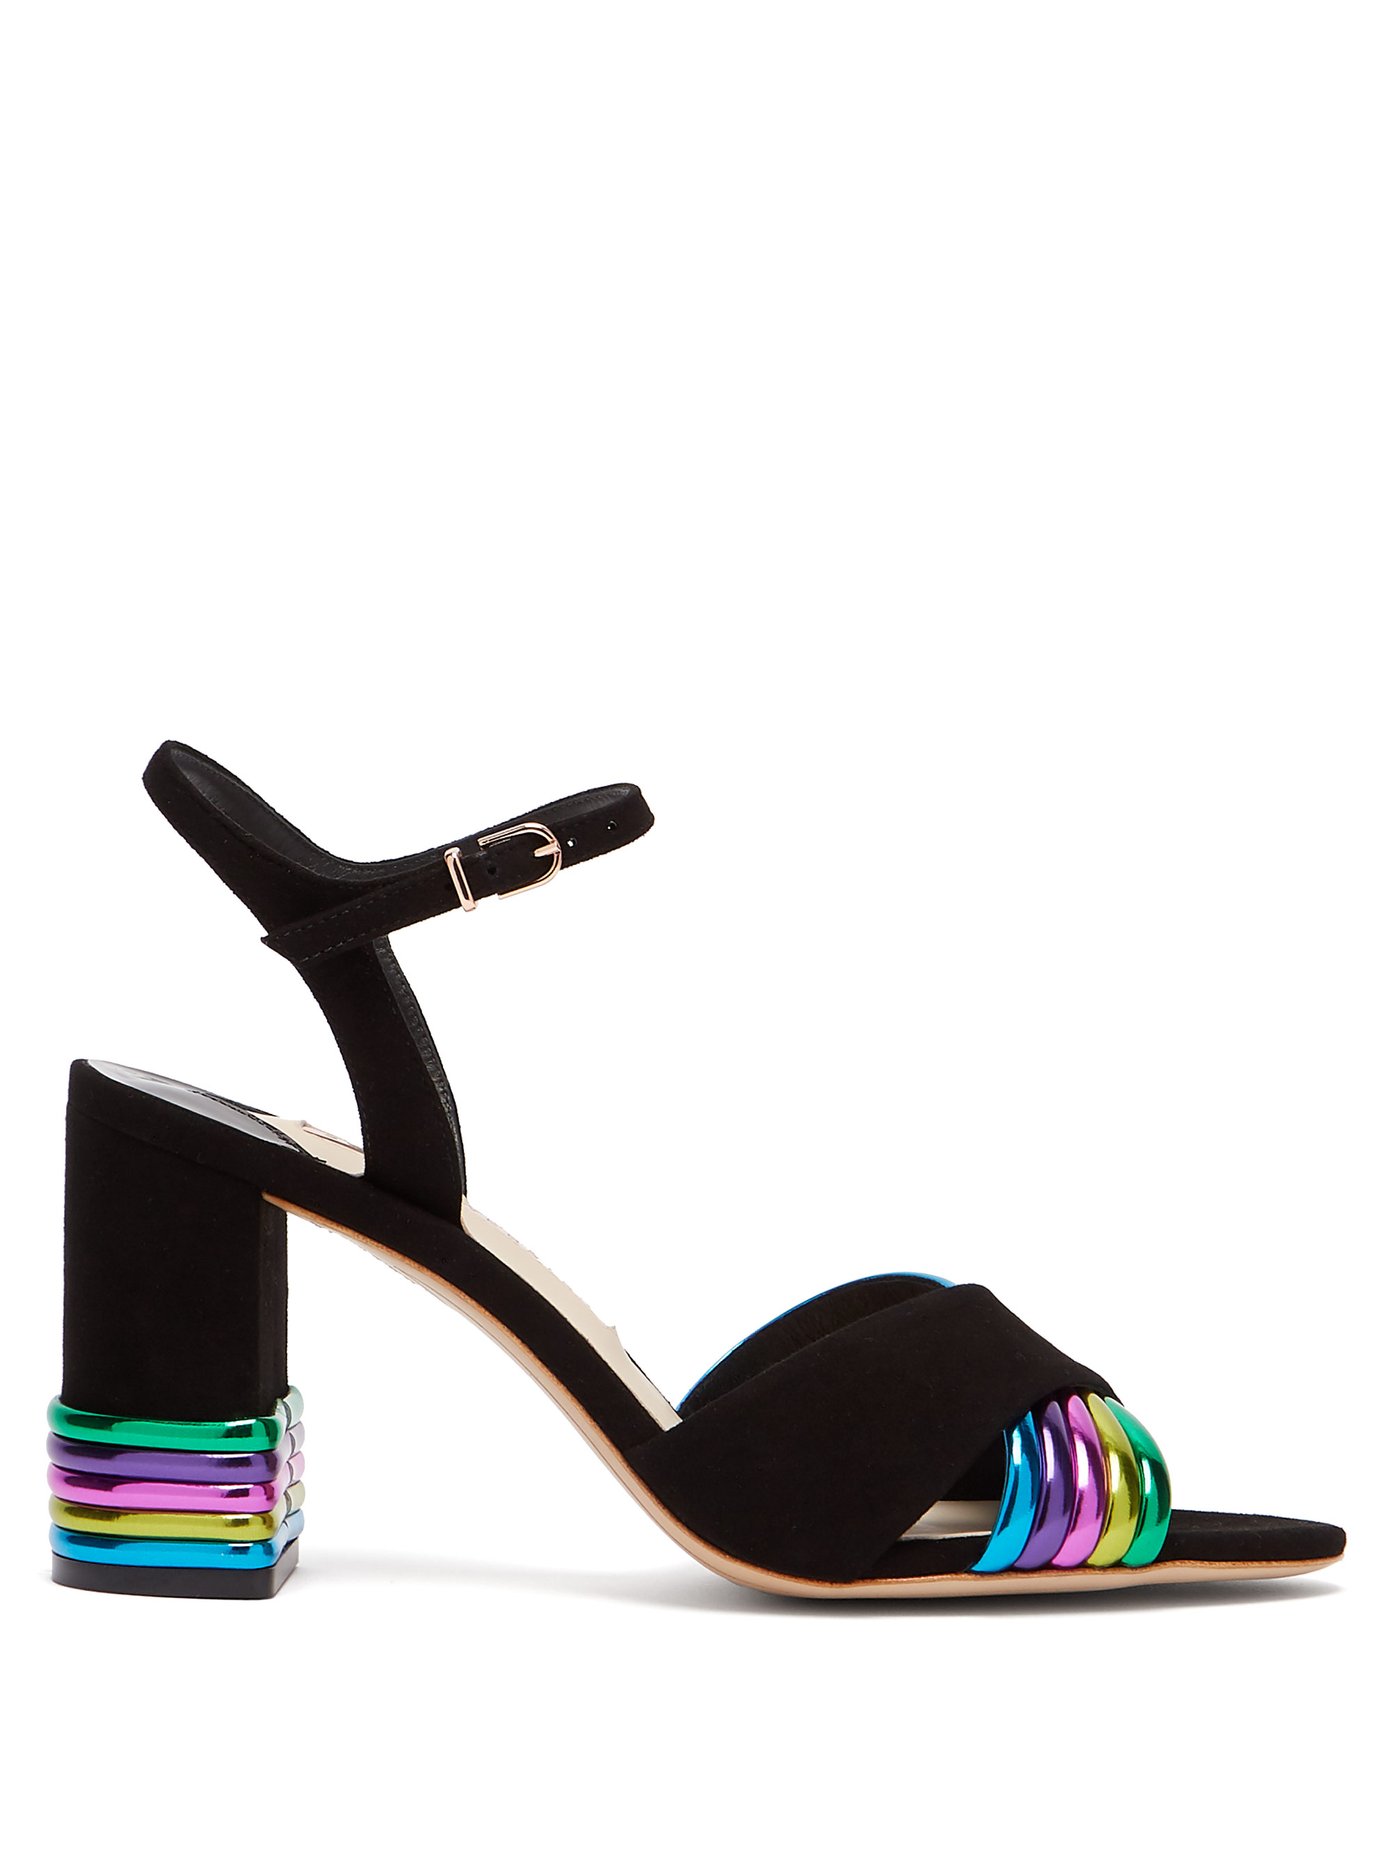 sophia webster rainbow heels